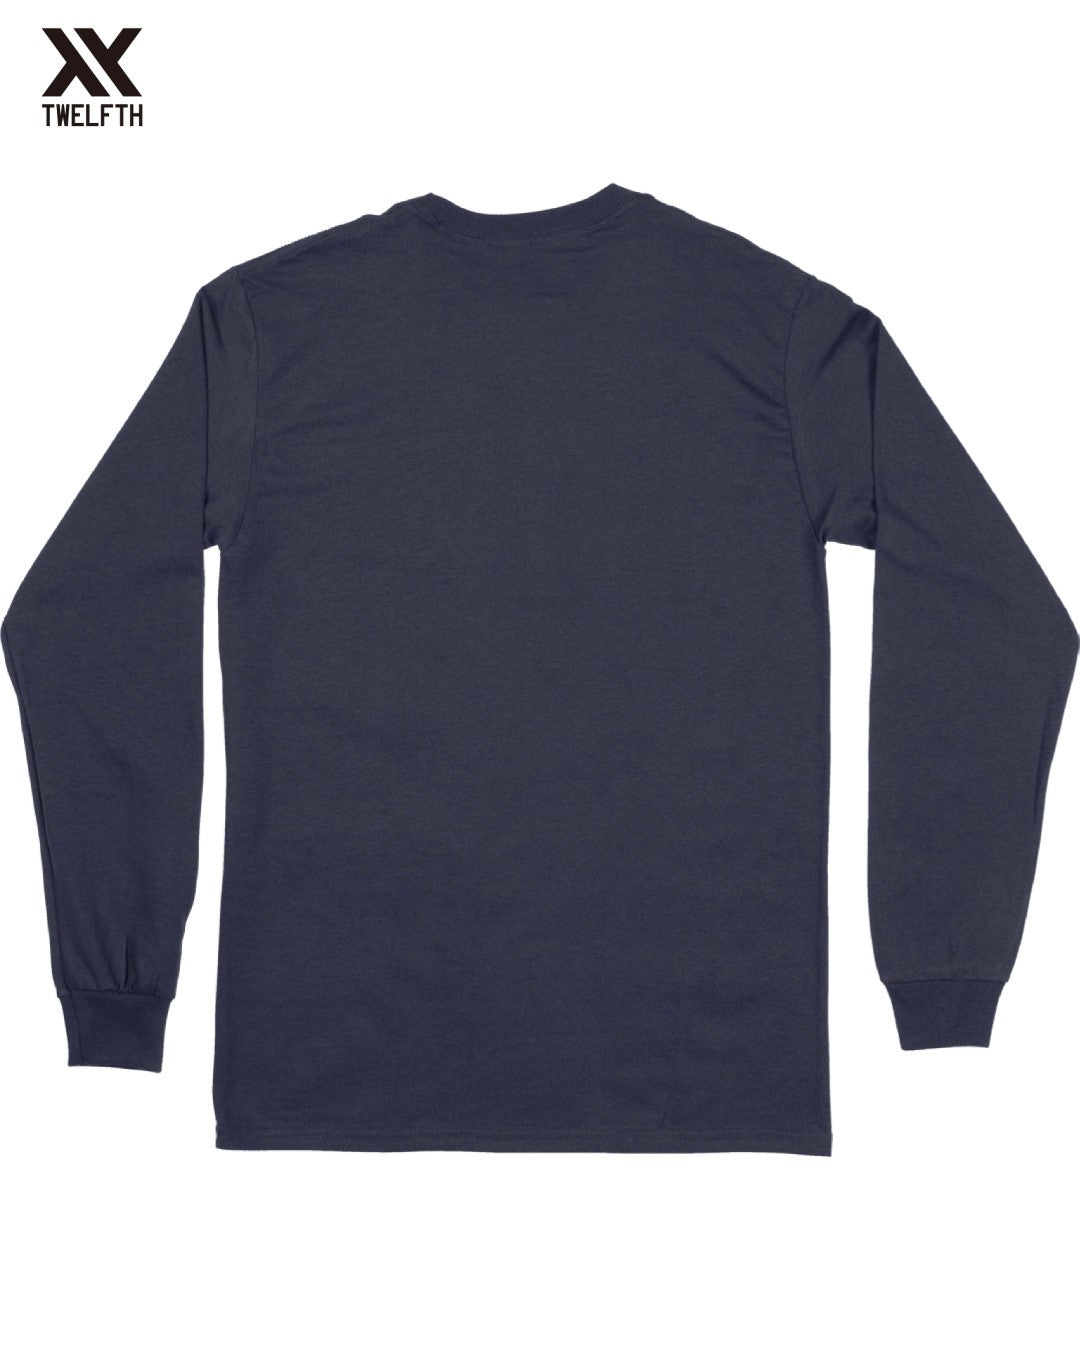 Hotspur Crest T-Shirt - Mens - Long Sleeve